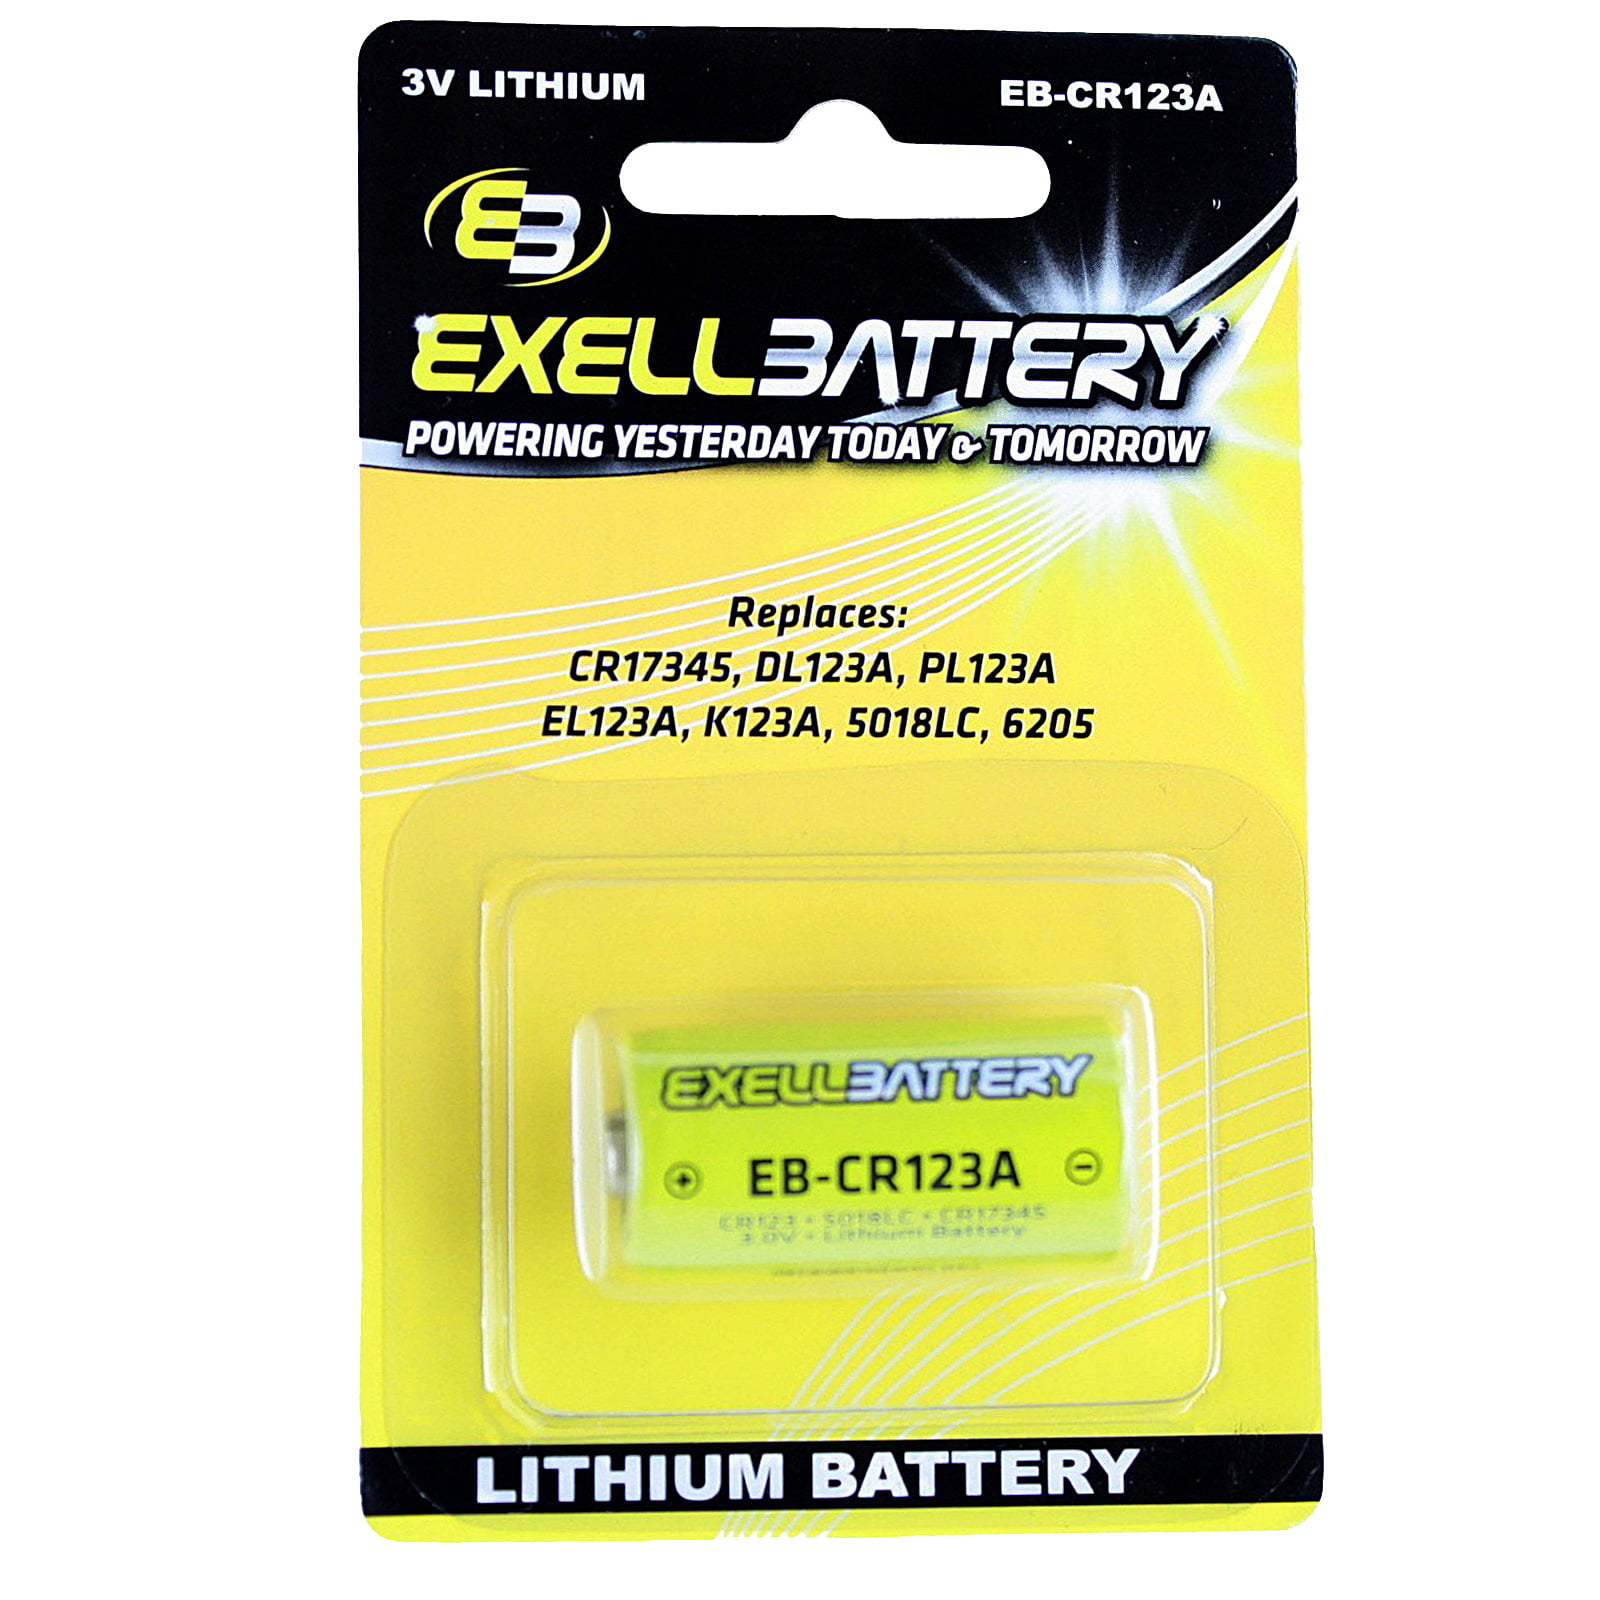 getrouwd Mm het internet 30pc Essential Batteries Kit 23A L1154 A28PX CR123A & Battery Case, Watch  Opener - Walmart.com